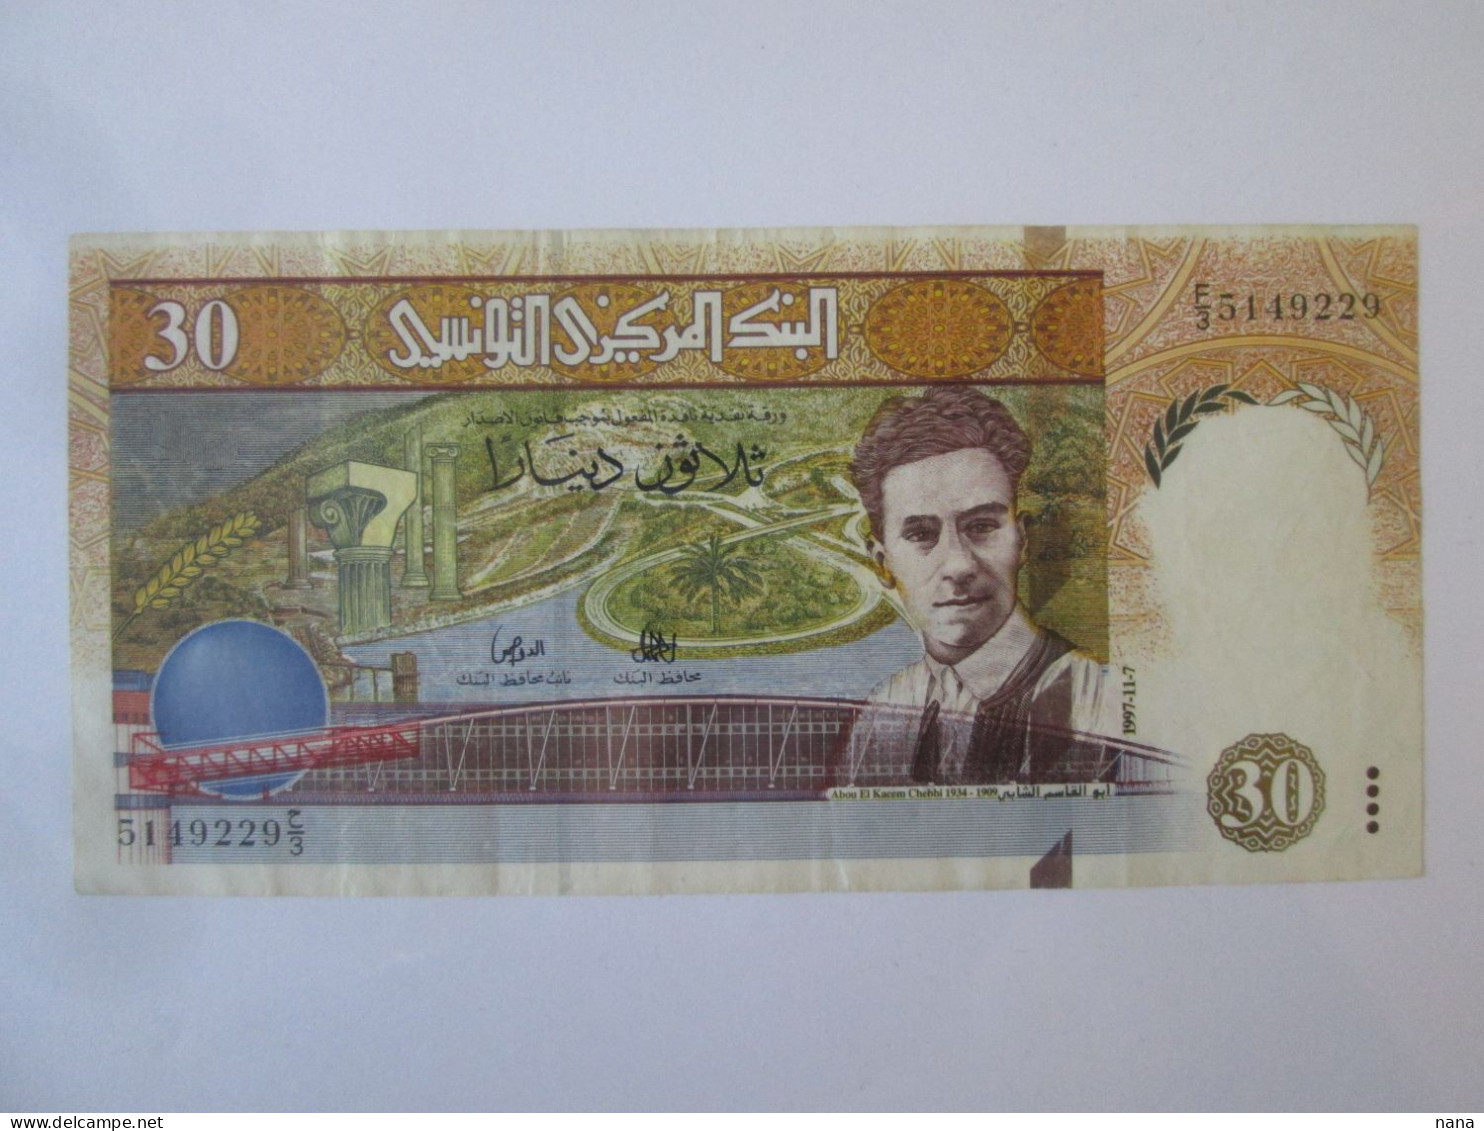 Tunisia/Tunisie 30 Dinars 1997 Banknote AUNC See Pictures - Tunisia